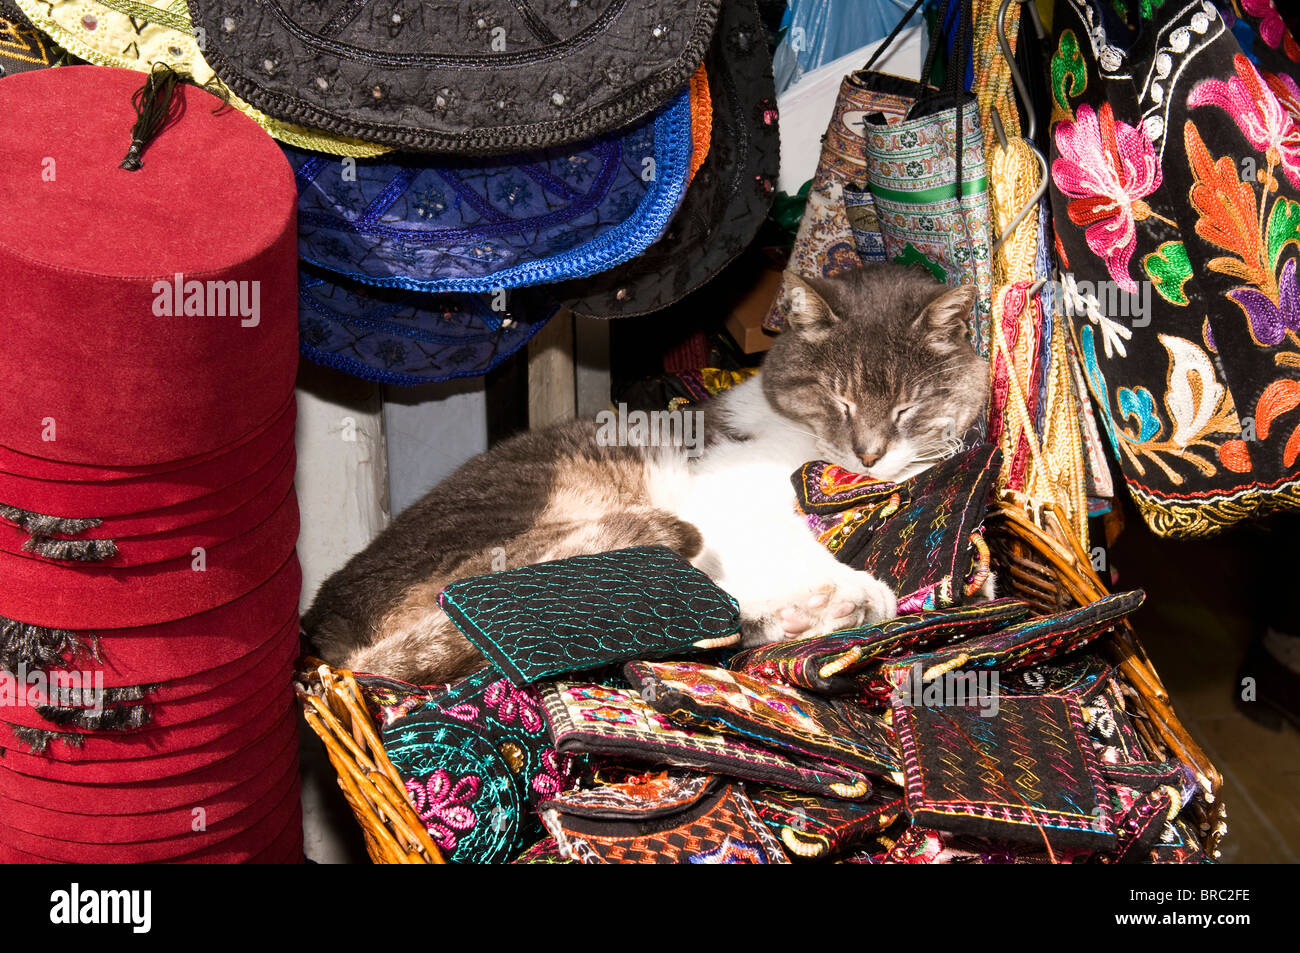 Sleeping cat sur un étal, Grand Bazar, Istanbul, Turquie Banque D'Images